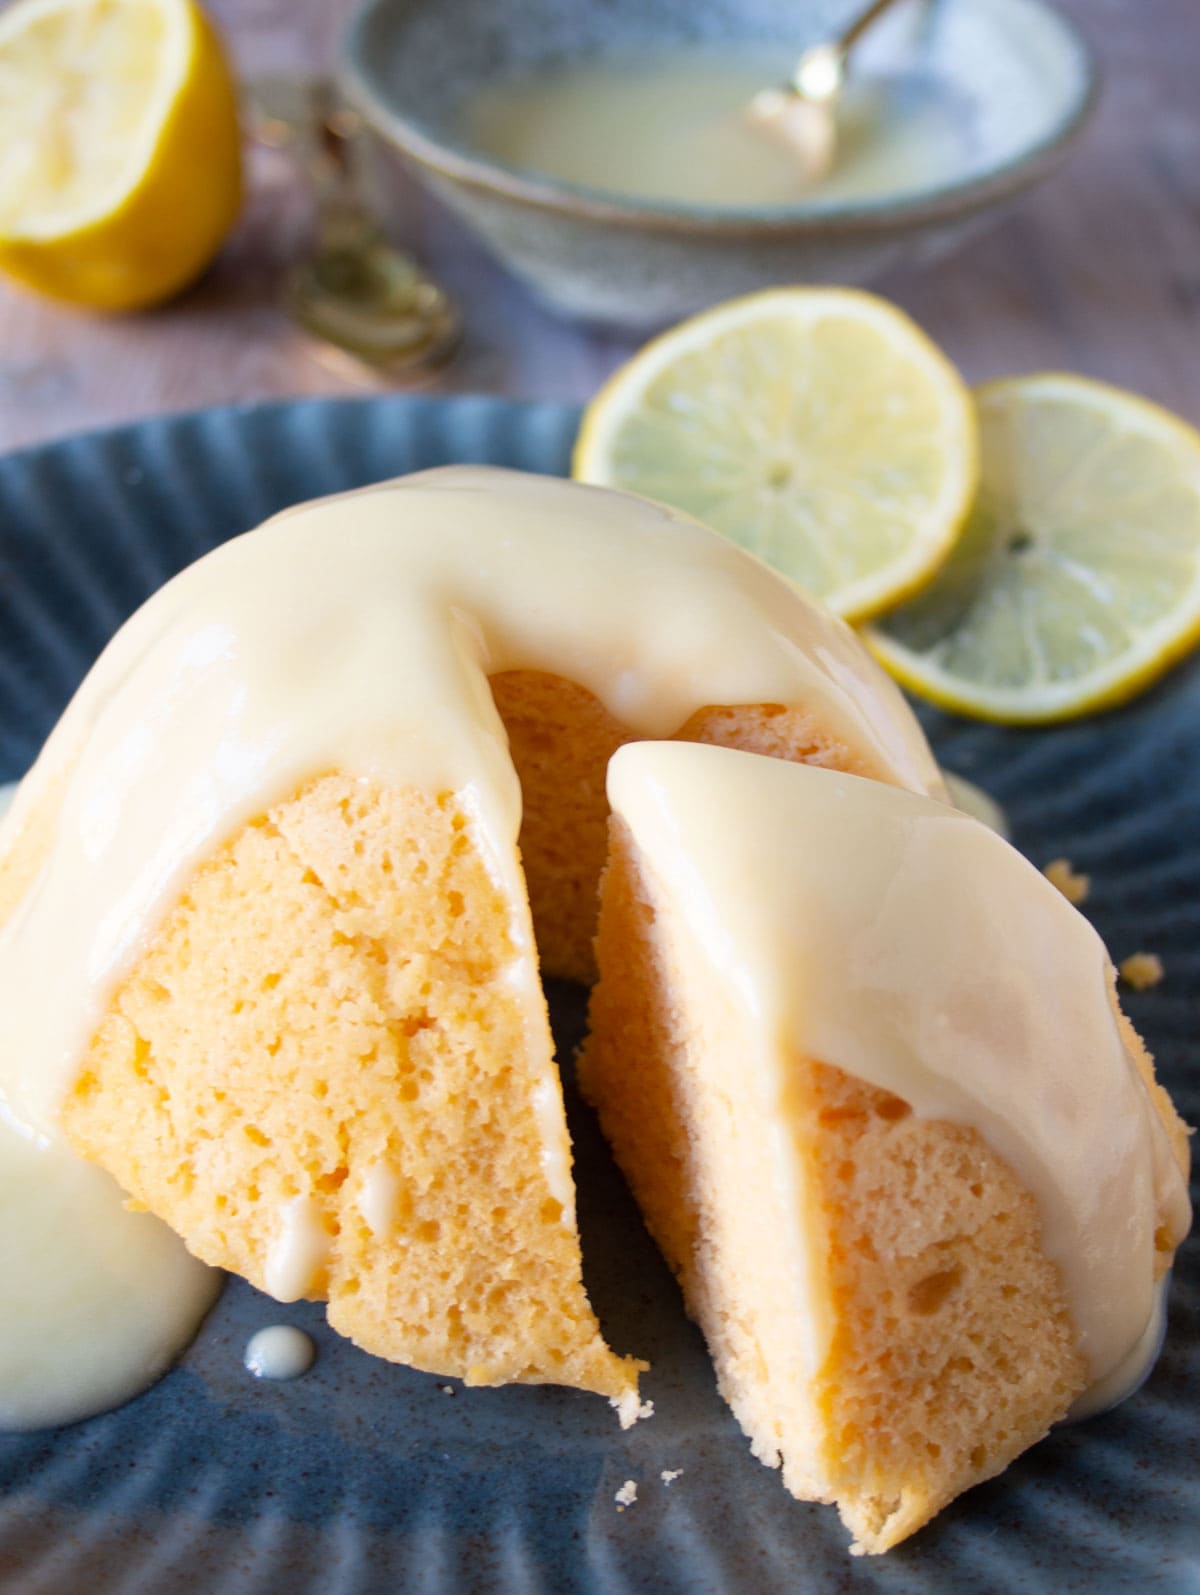 A lemon cake with lemon glaze on a plate.